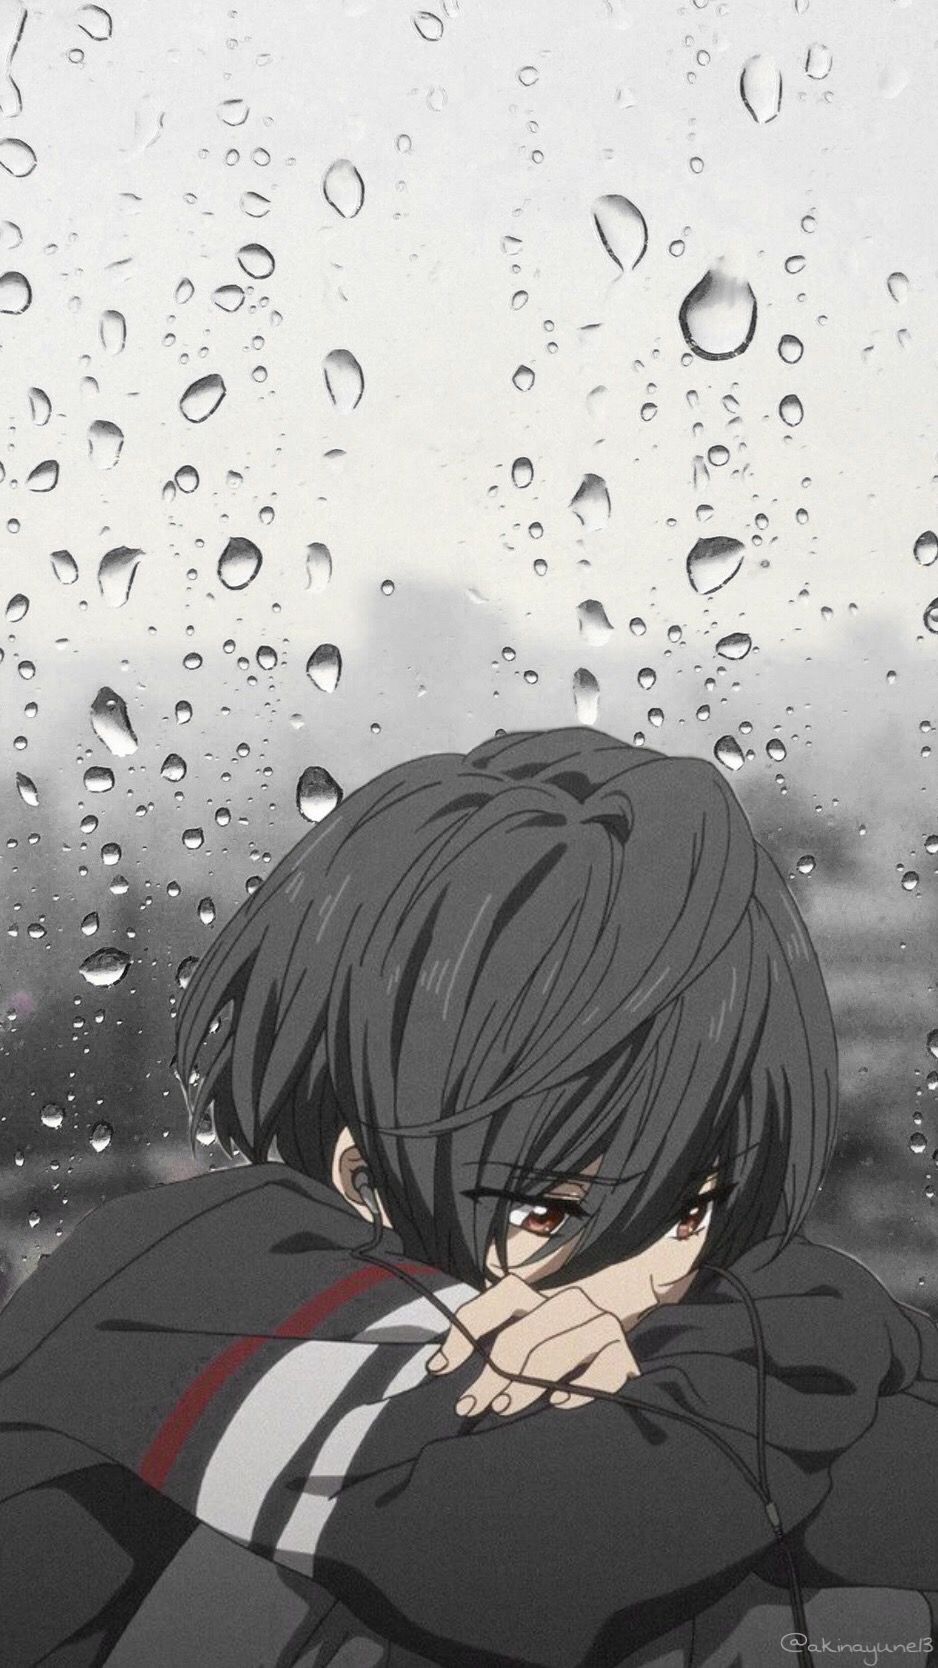 Sad Anime Wallpapers on WallpaperDog